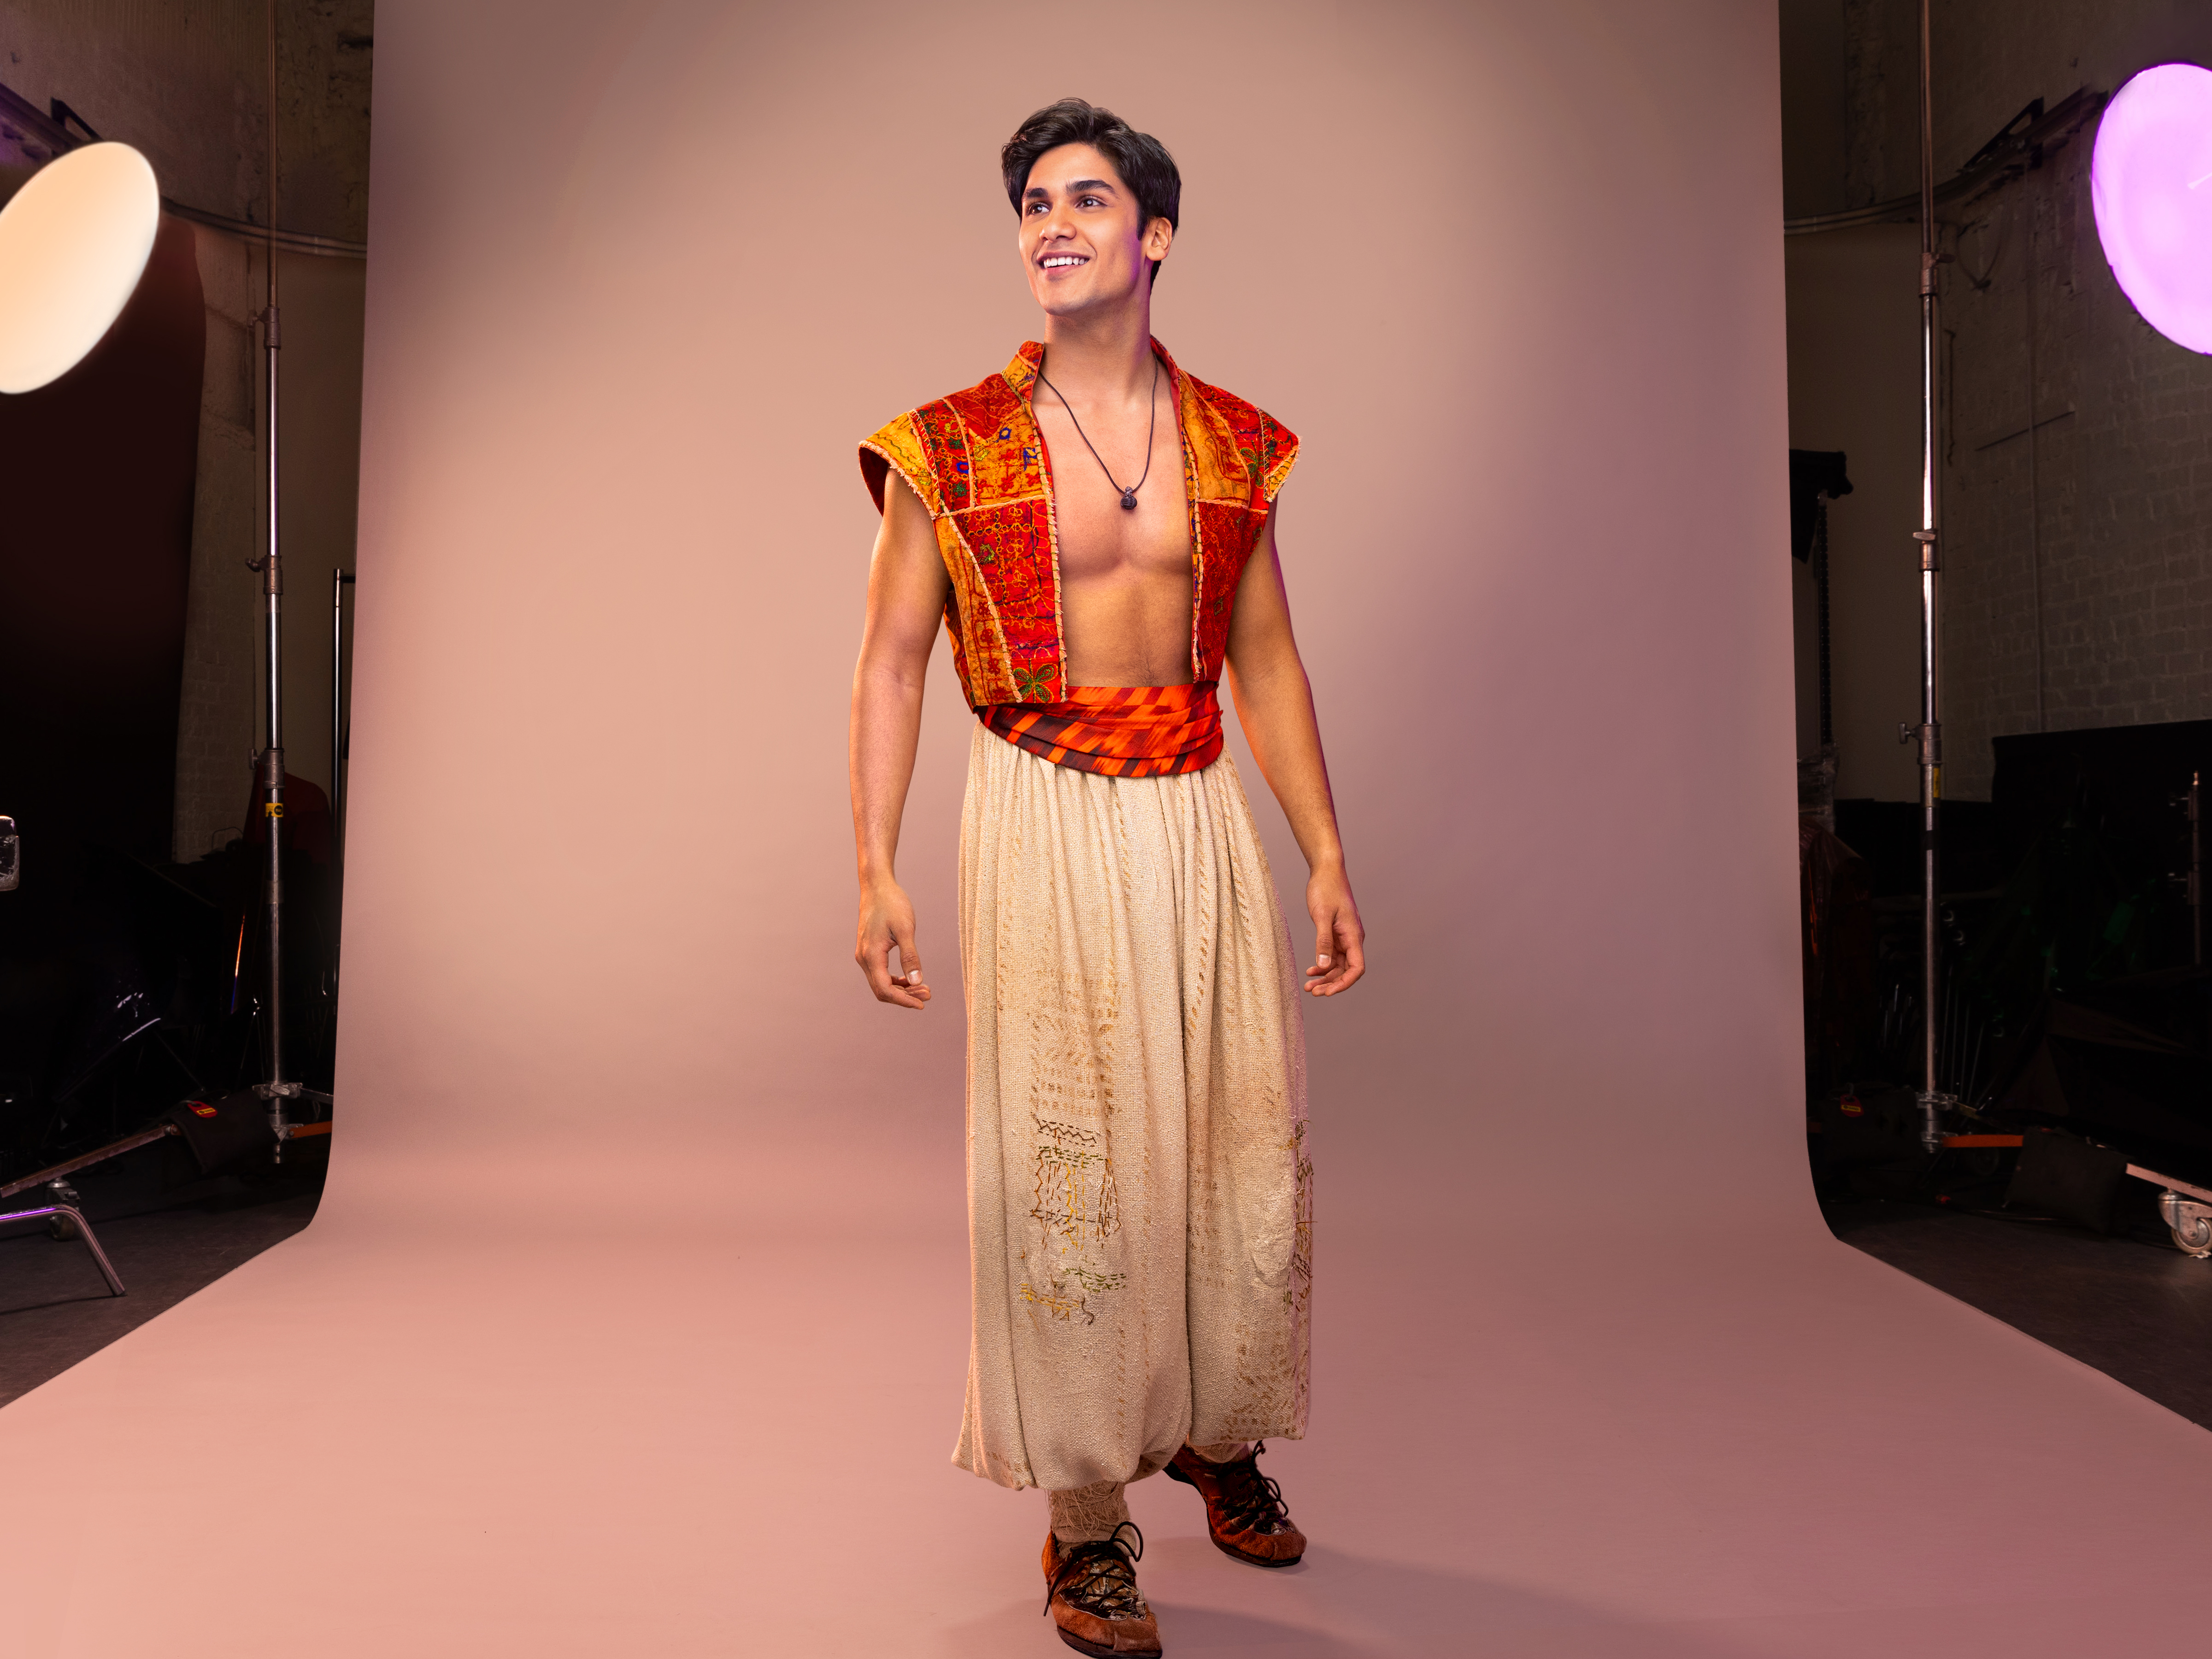 Adi Roy as Aladdin (© Matthew Murphy)